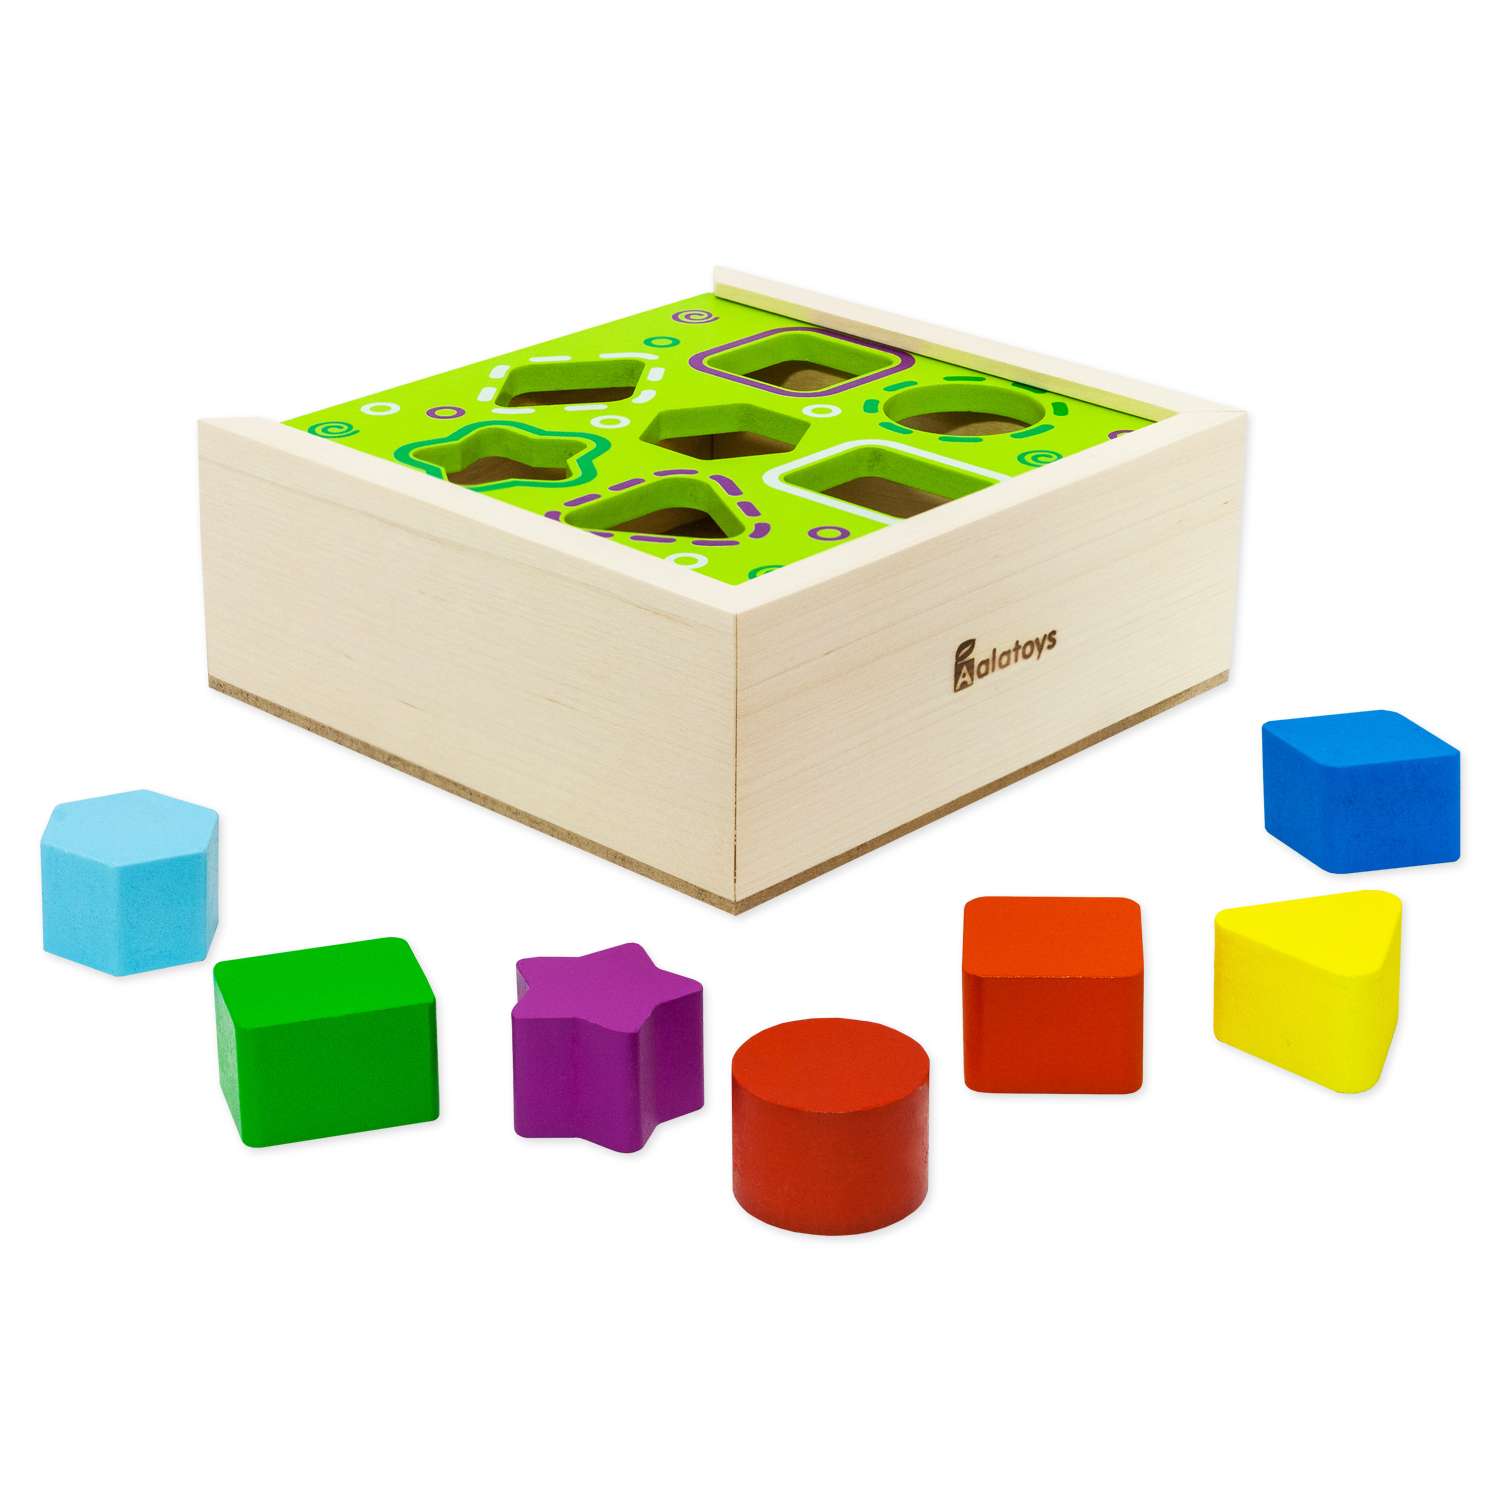 Сортер ящик 7 фигур Alatoys развивающая деревянная игрушка Монтессори + гайд с играми - фото 14